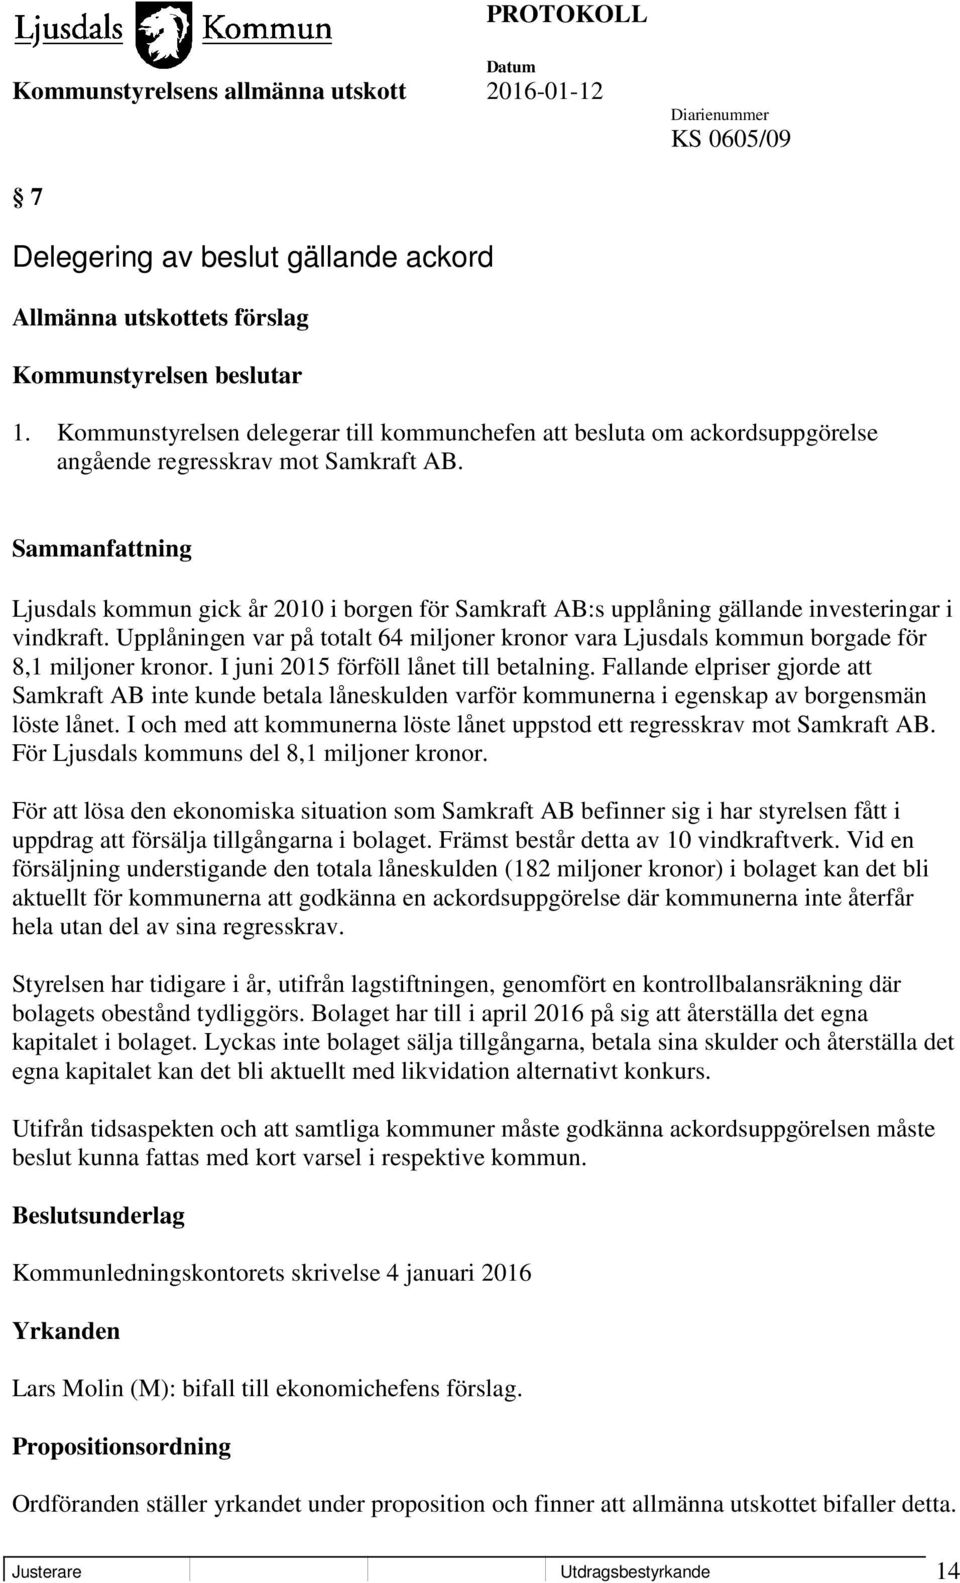 Ljusdals kommun gick år 2010 i borgen för Samkraft AB:s upplåning gällande investeringar i vindkraft. Upplåningen var på totalt 64 miljoner kronor vara Ljusdals kommun borgade för 8,1 miljoner kronor.